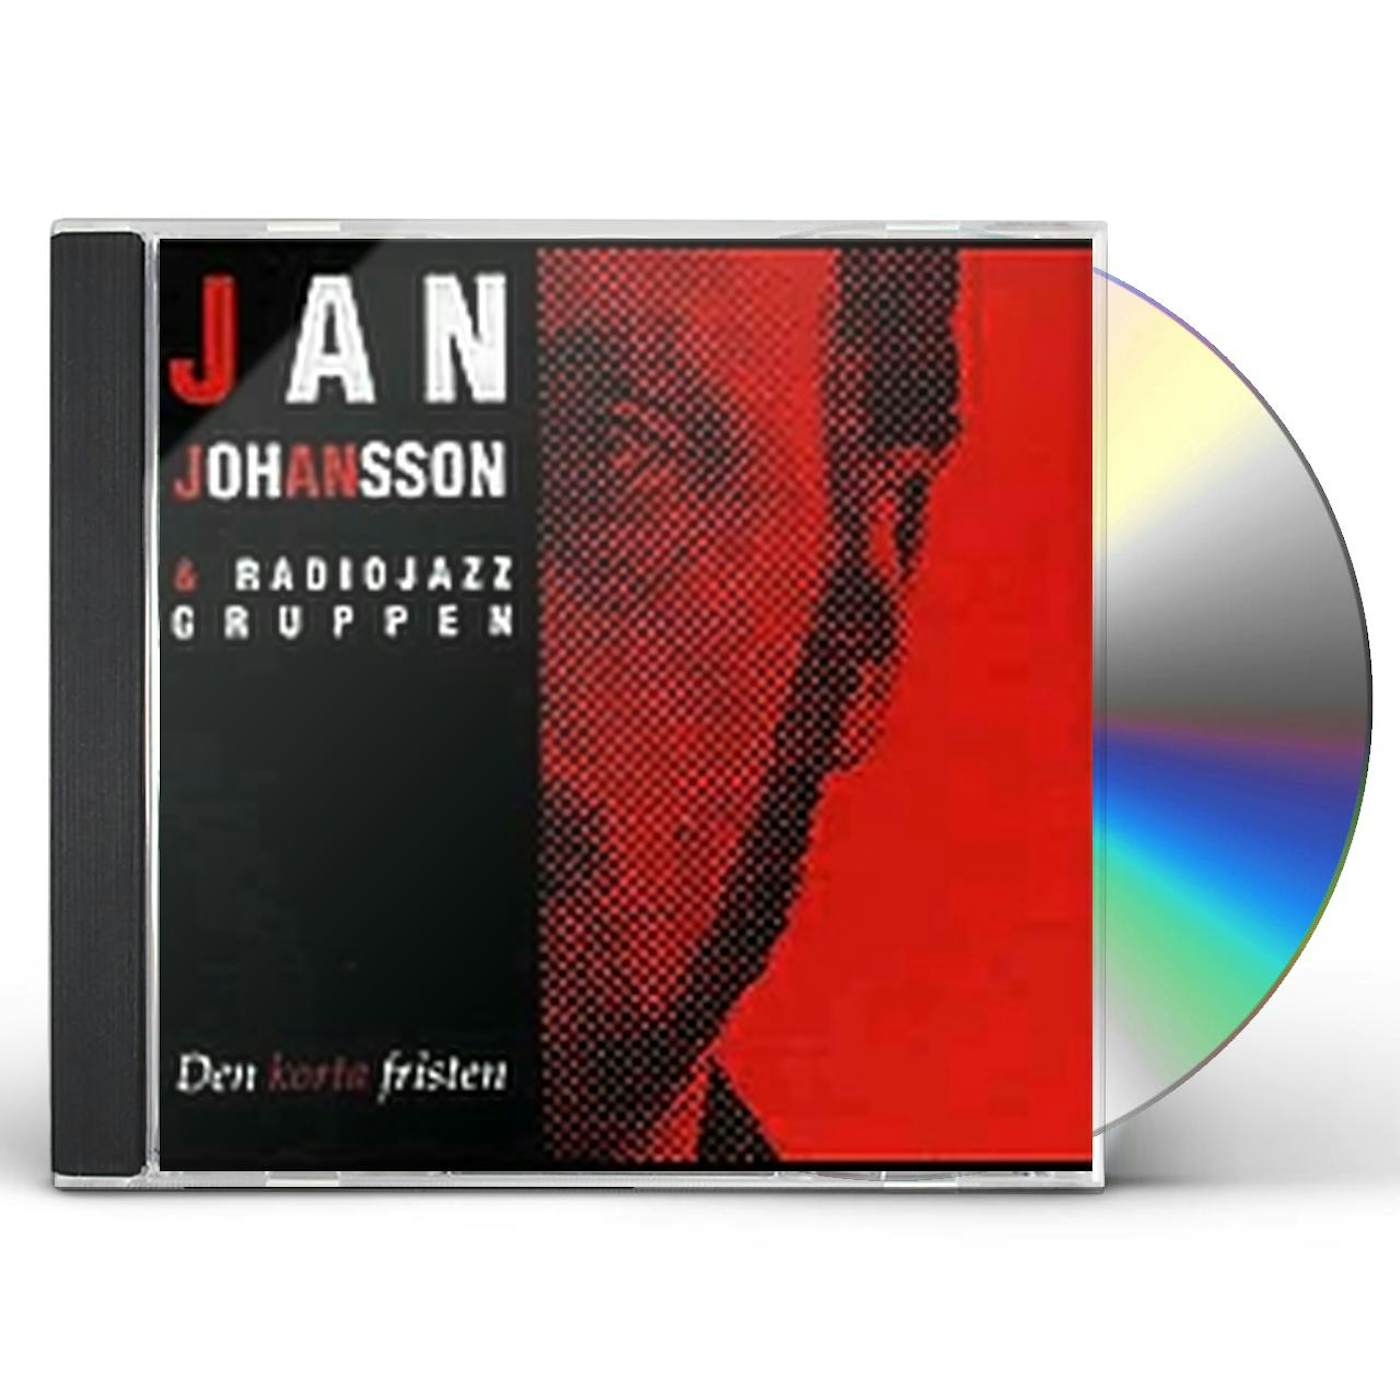 Jan Johansson DEN KORTA FRISTEN CD